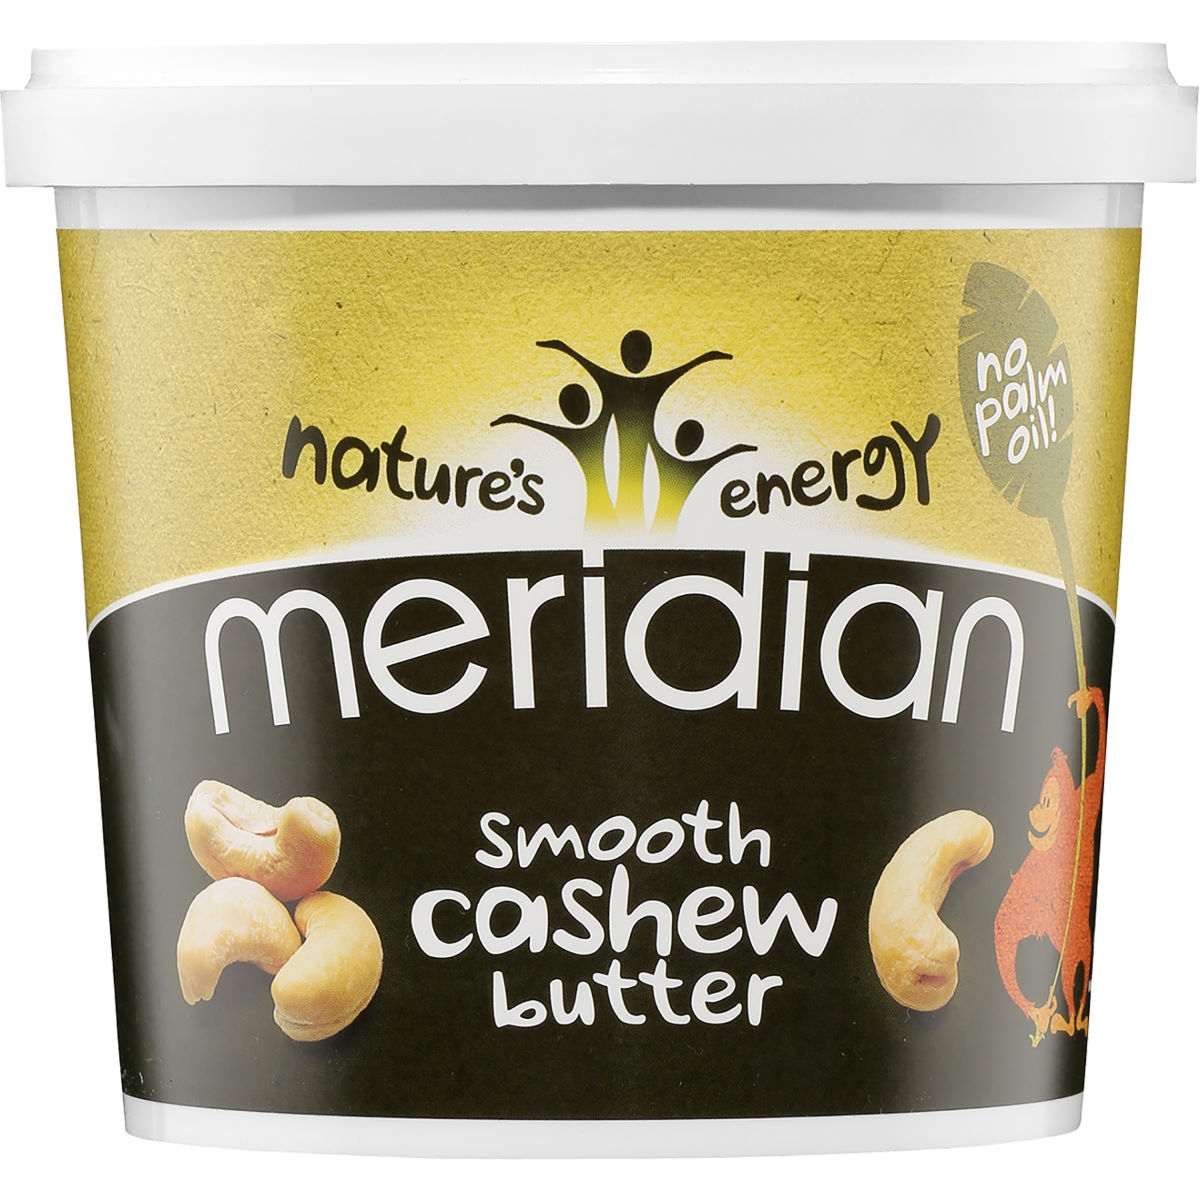 Mantequilla de anacardos Meridian Cashew Smooth (1000 g) - Mantequillas de frutos secos